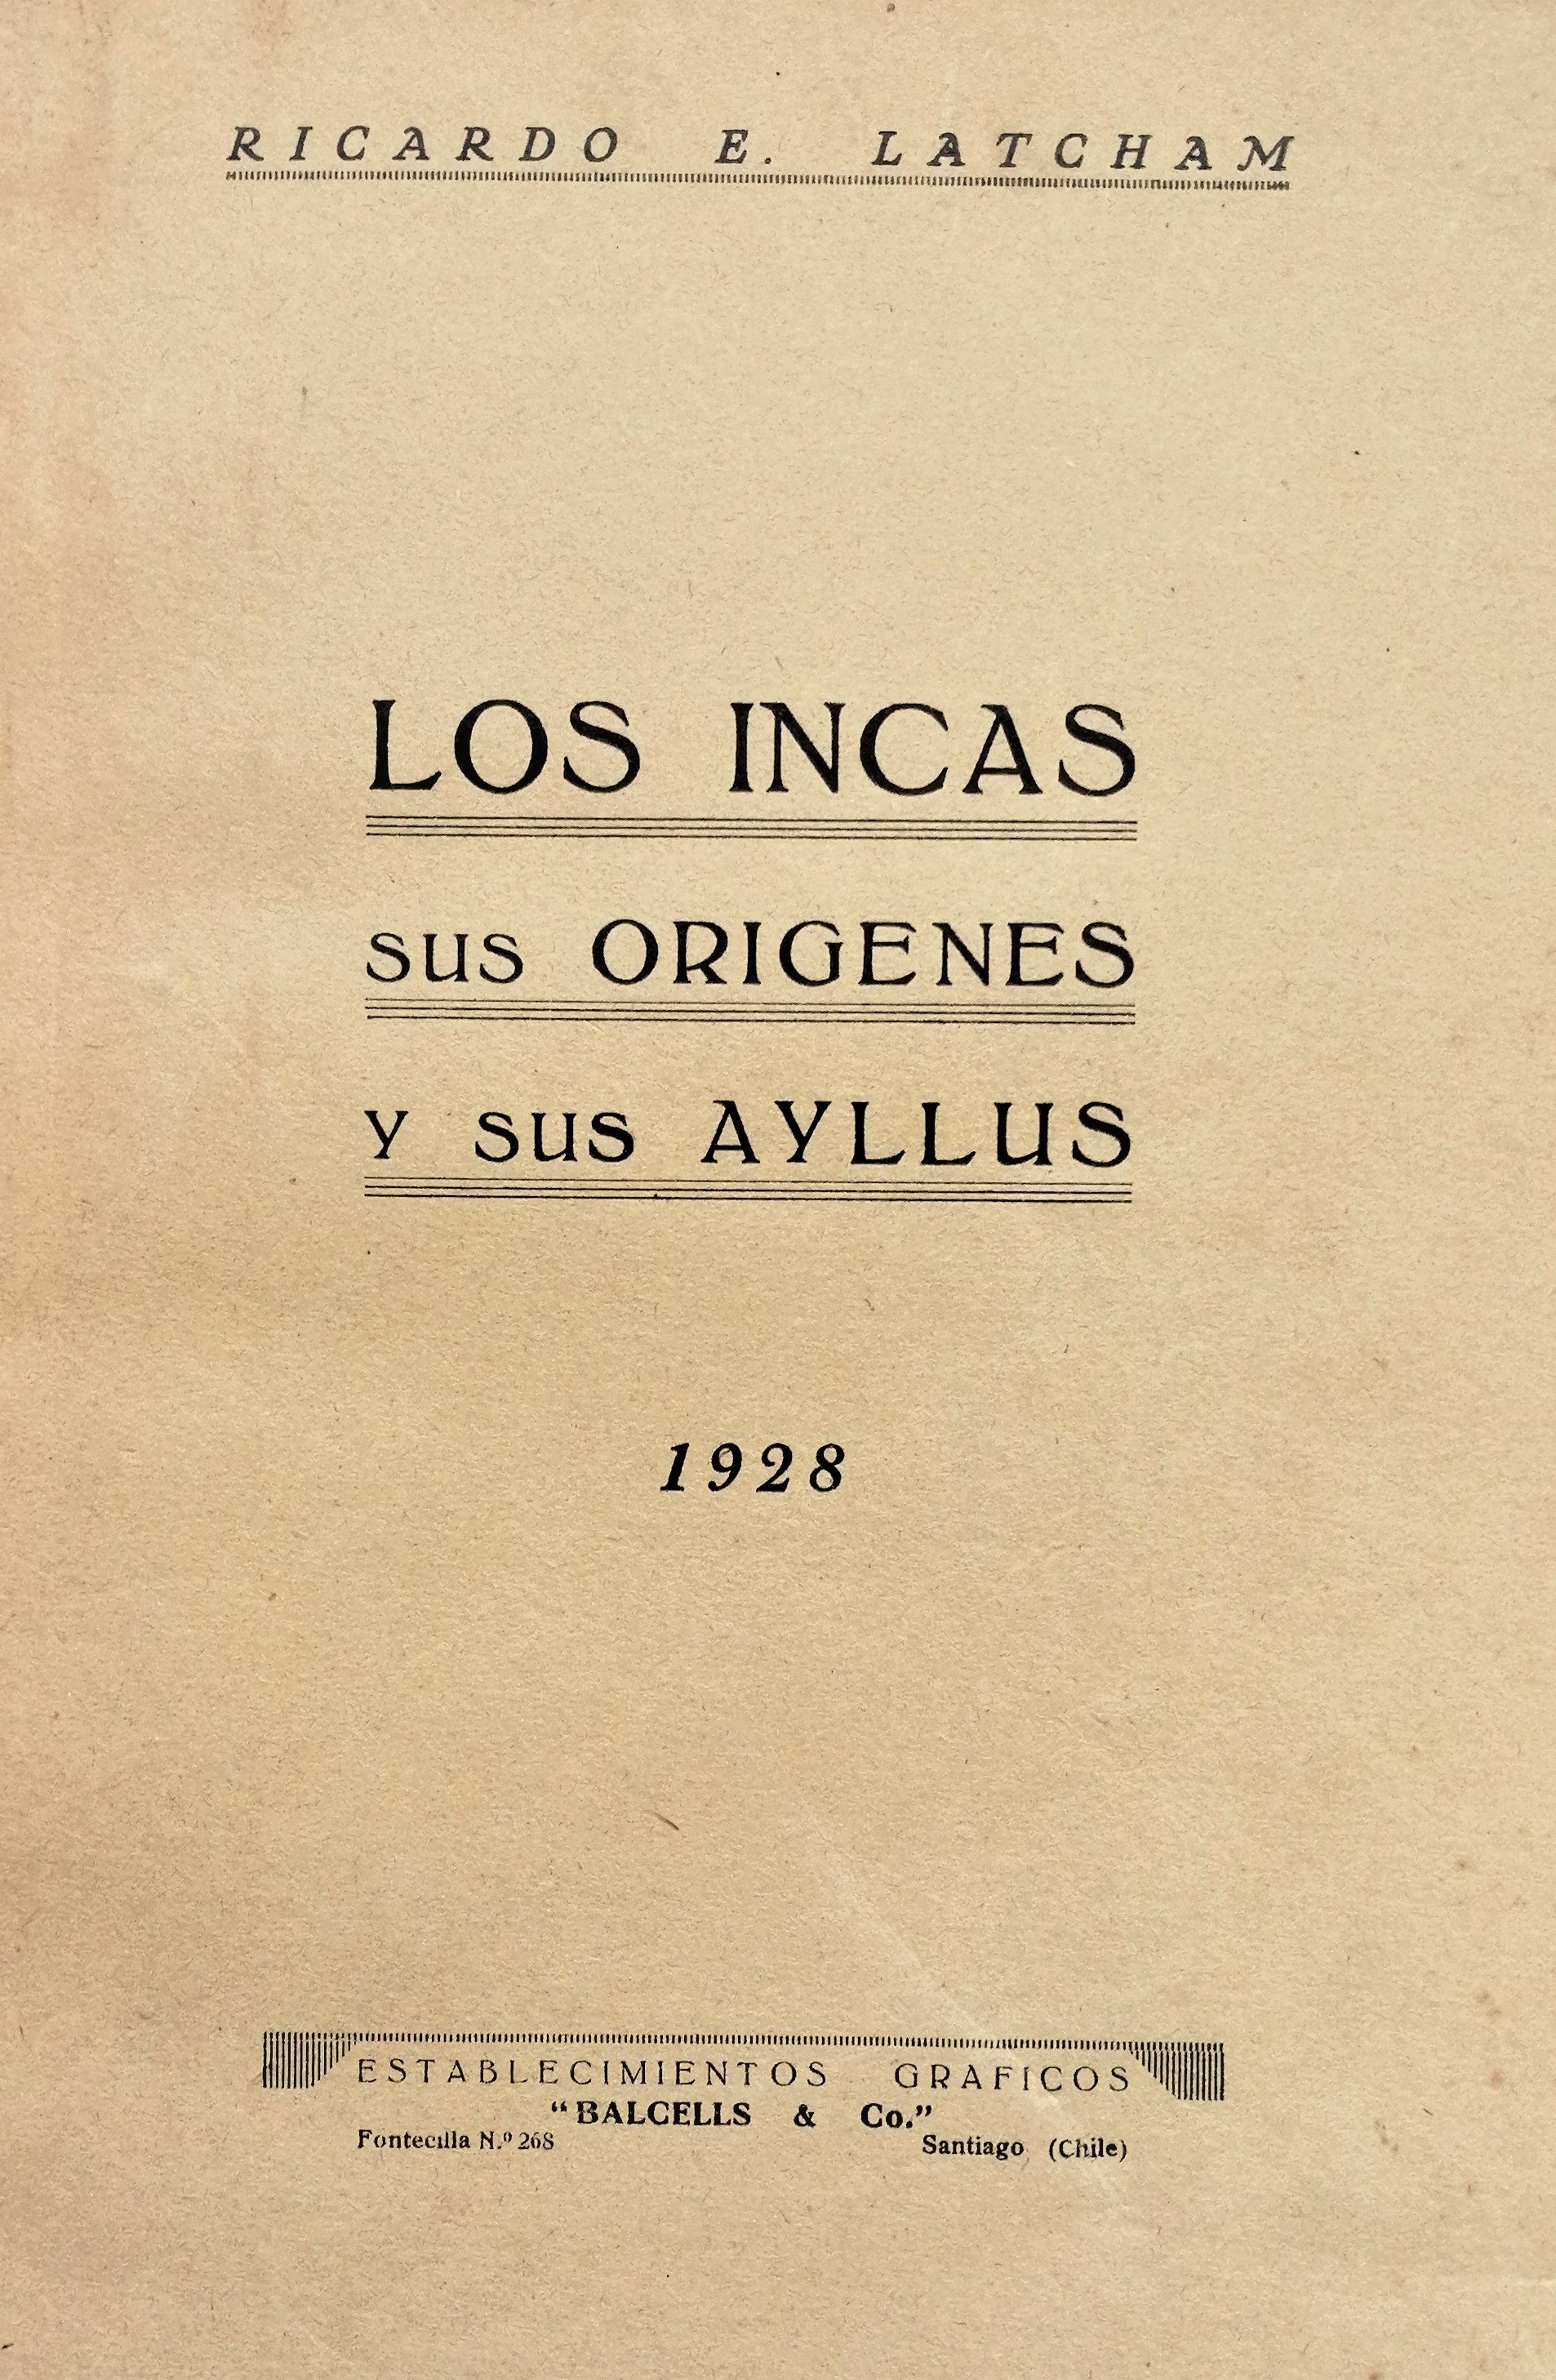 Ricardo E. Latcham - Los incas: sus orígenes y sus ayllus